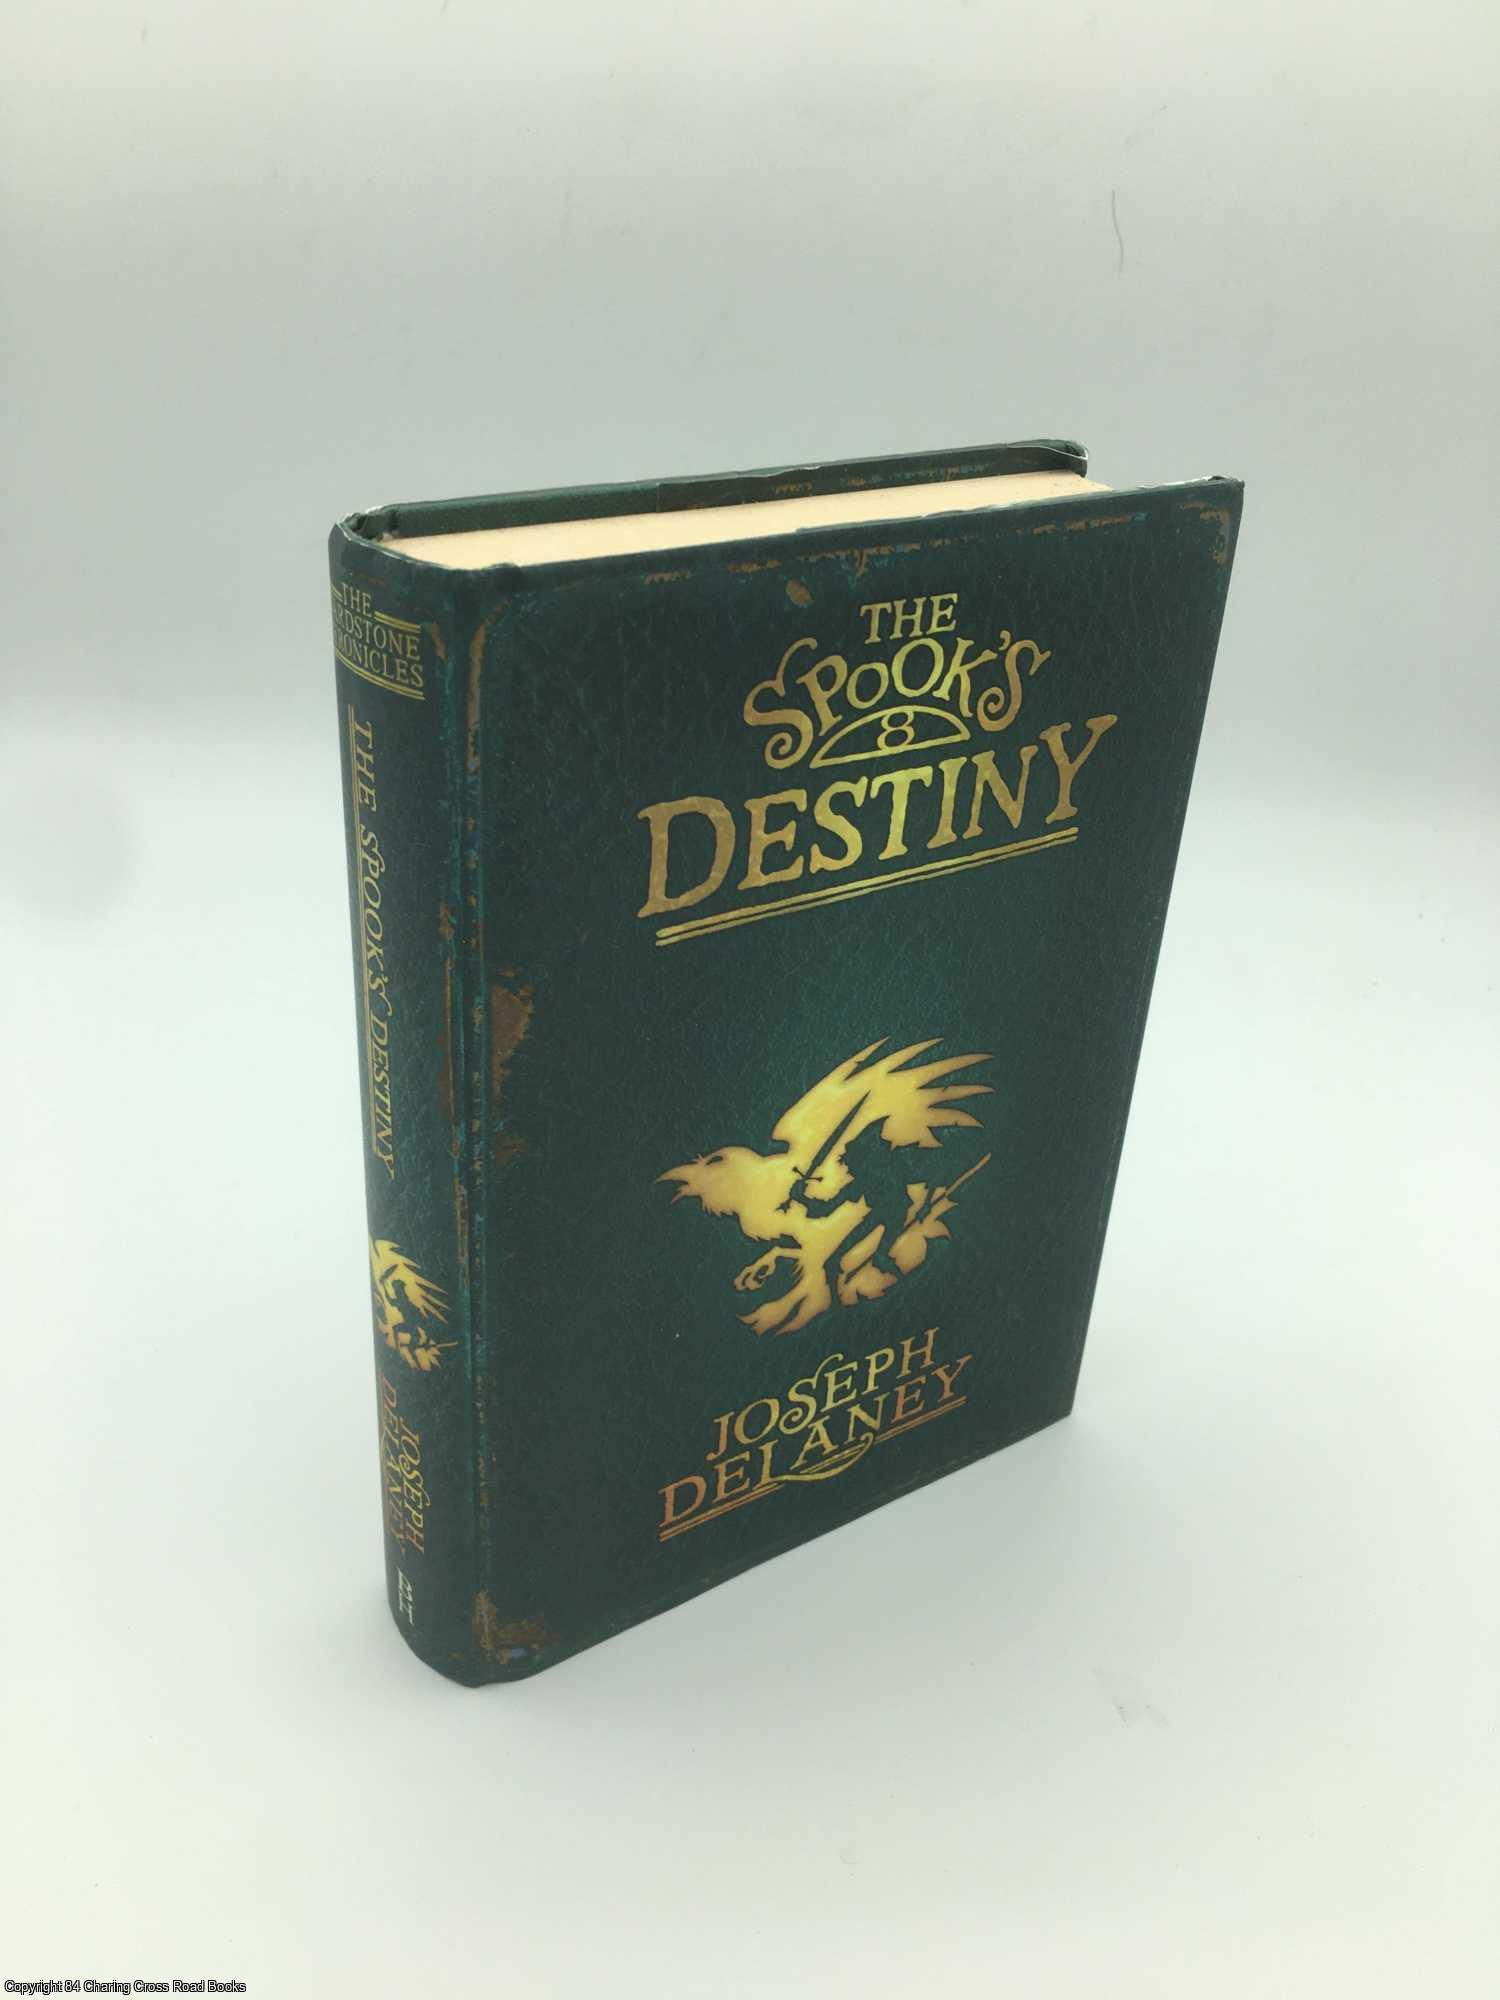 Delaney, Joseph - The Spook's Destiny: Book 8 Collector's Edition